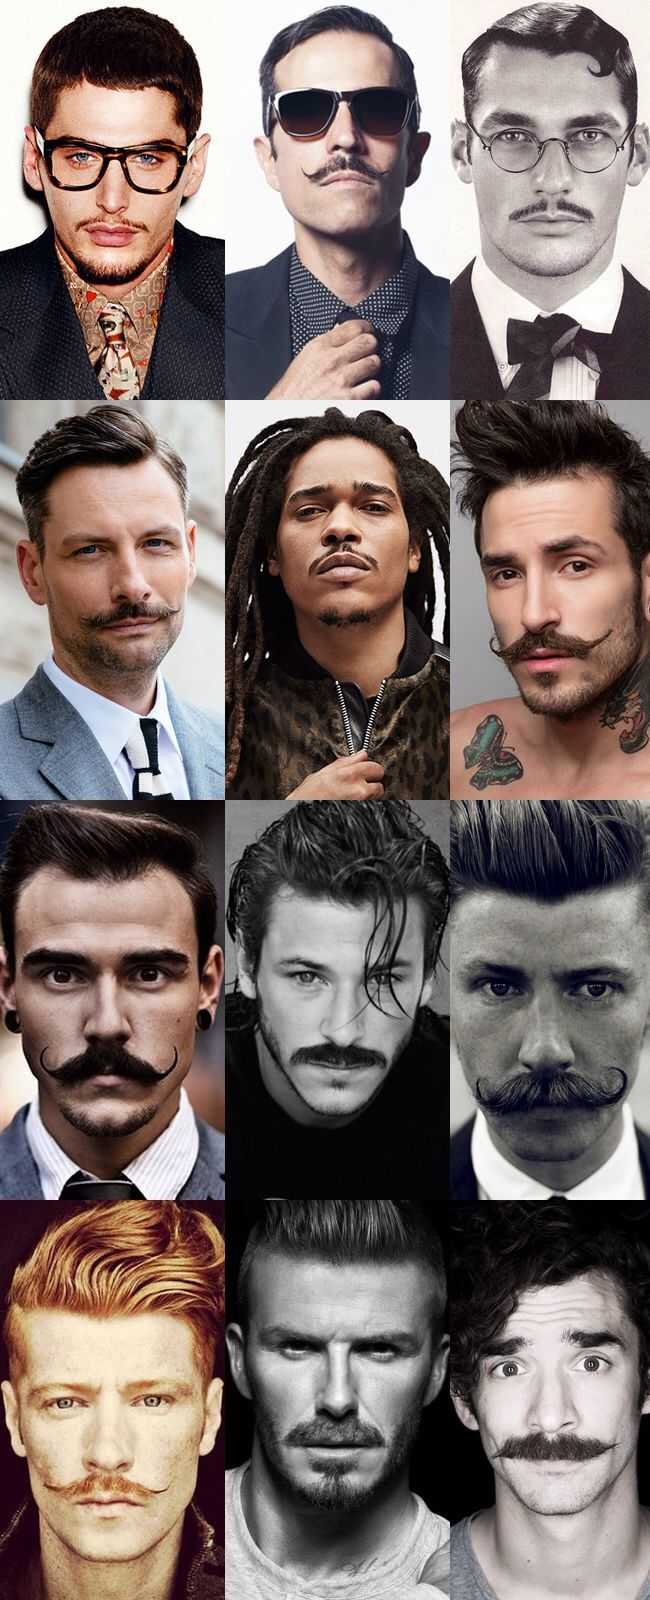 Эспаньолка: руководство как сделать стильную бороду